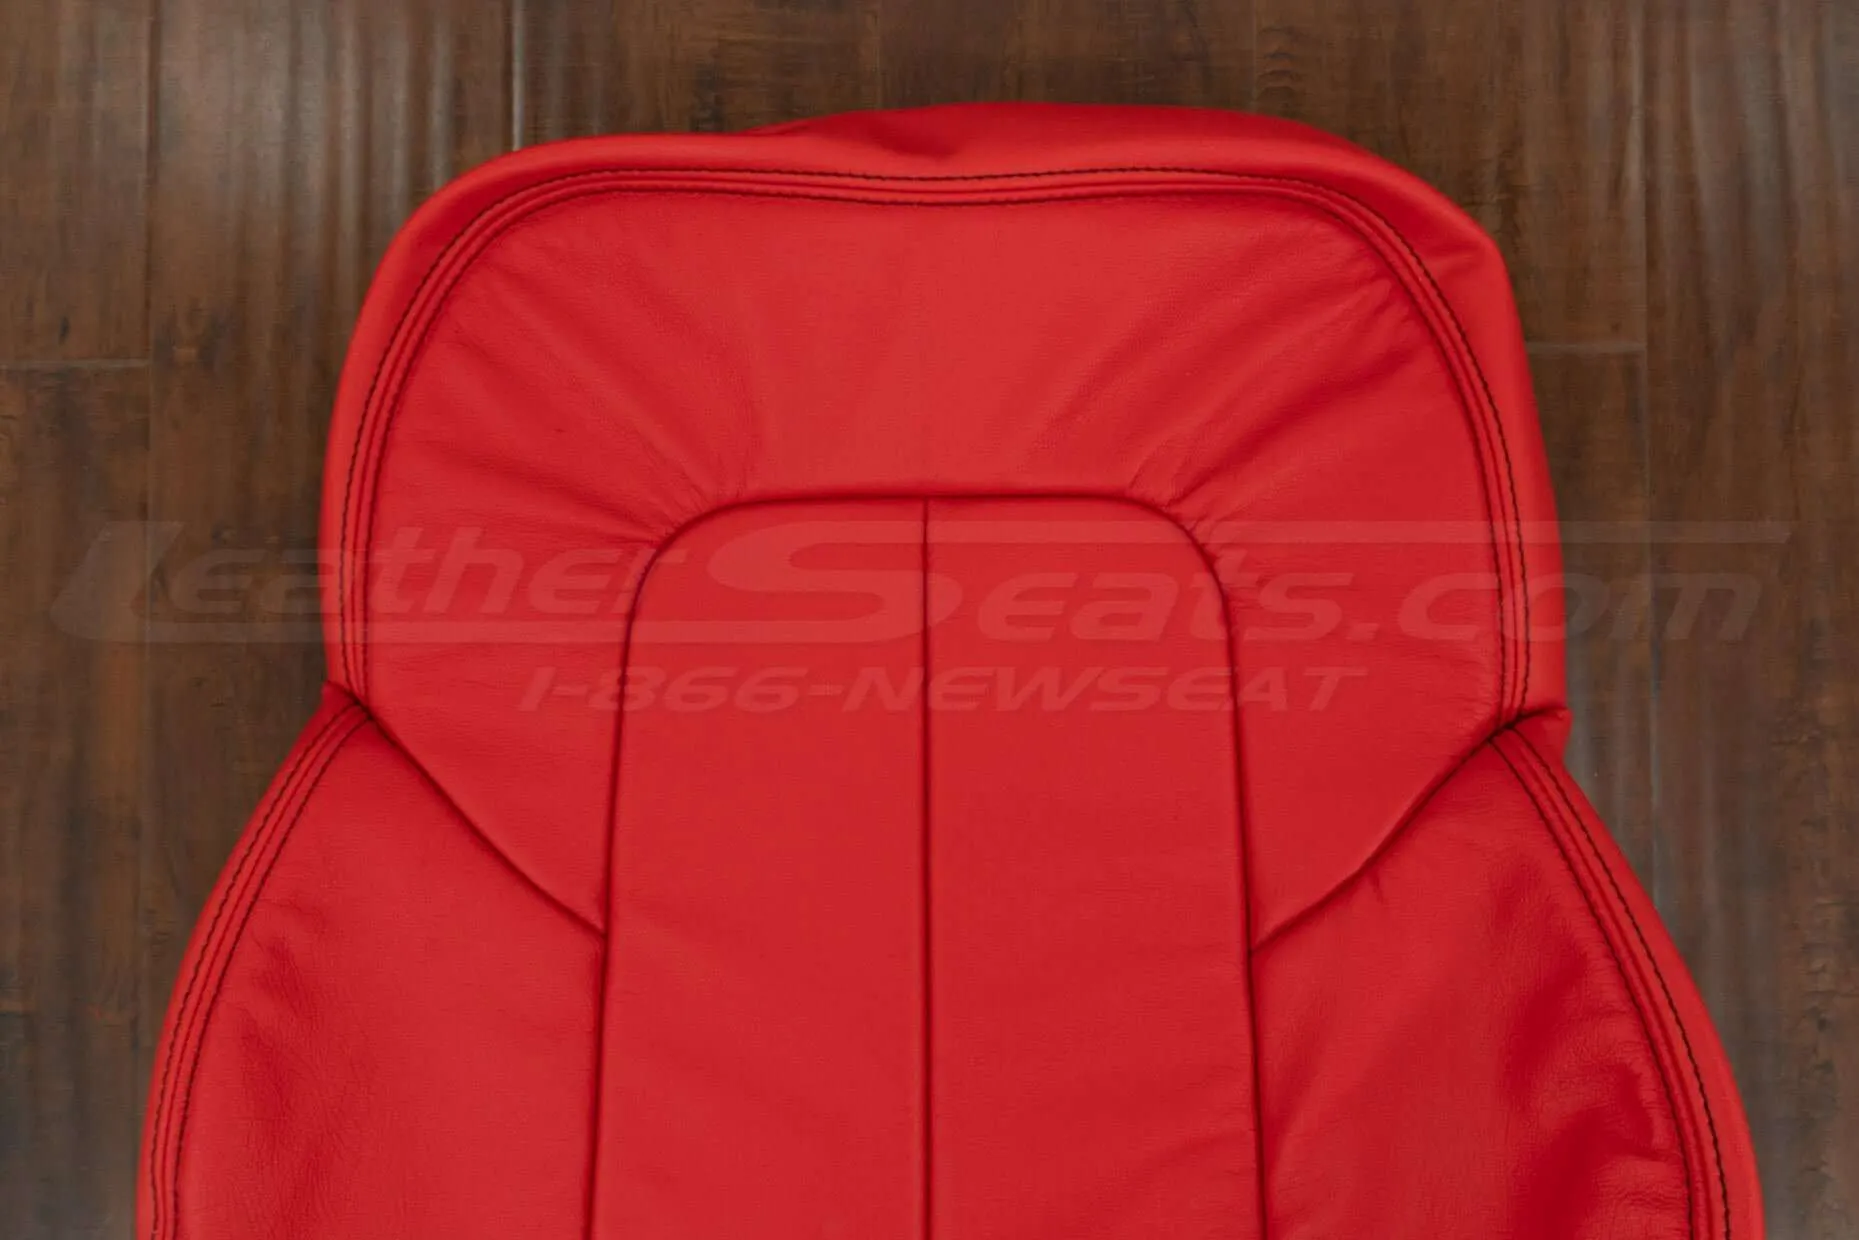 Upper sectionn of backrest upholstery